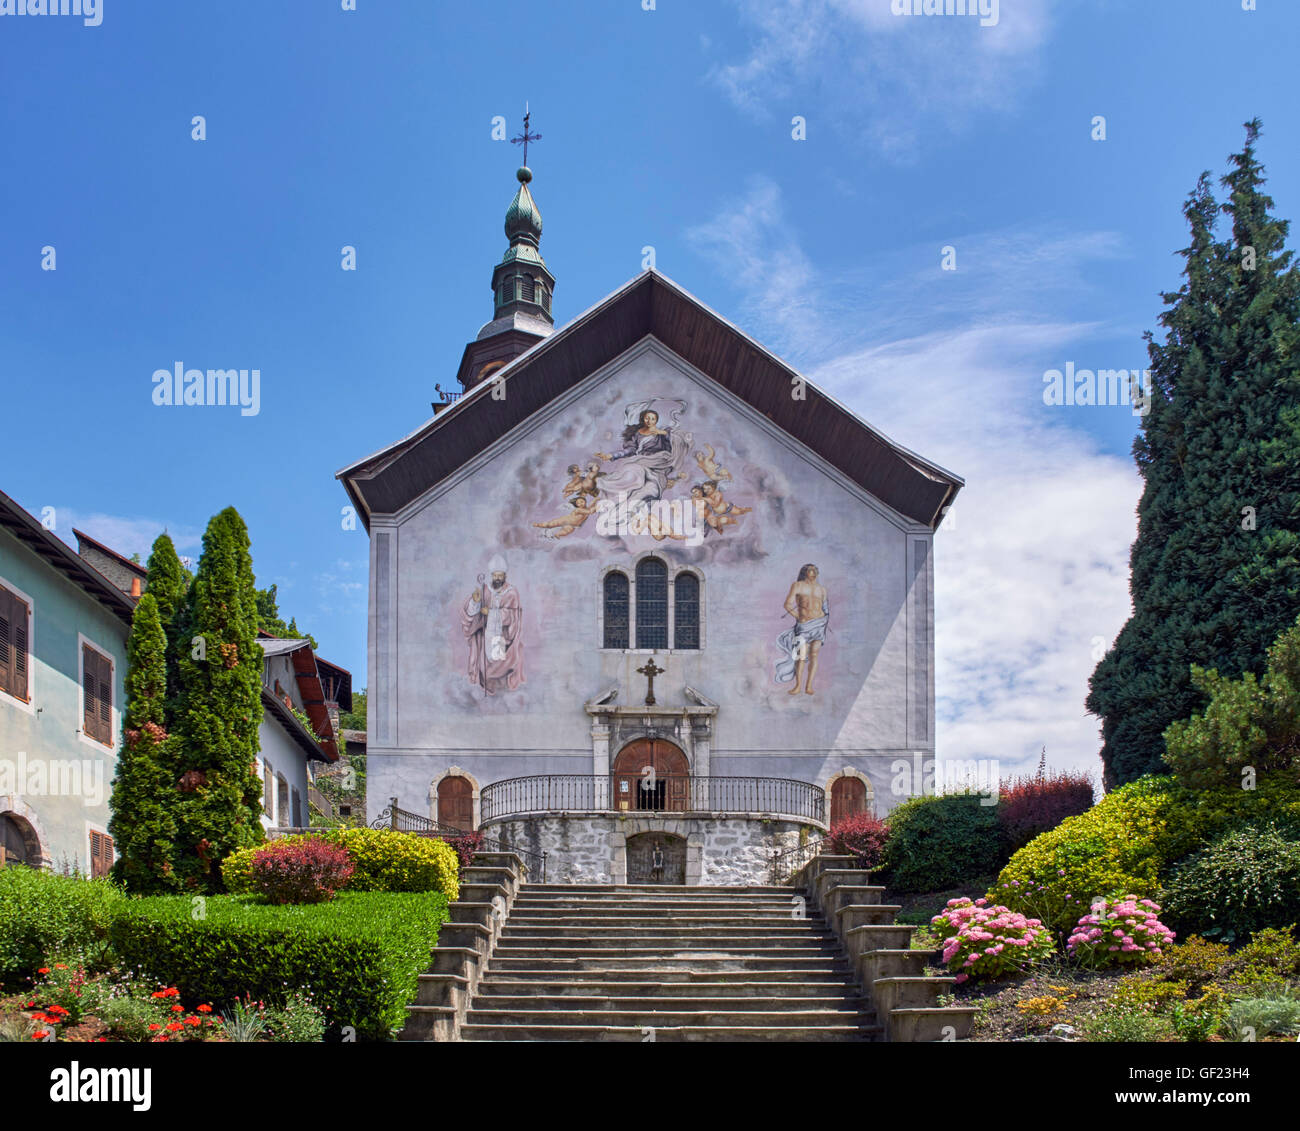 Église Notre-Dame-de-l'Assomption nel borgo medievale di Conflans. Albertville, Savoie, Francia. Foto Stock